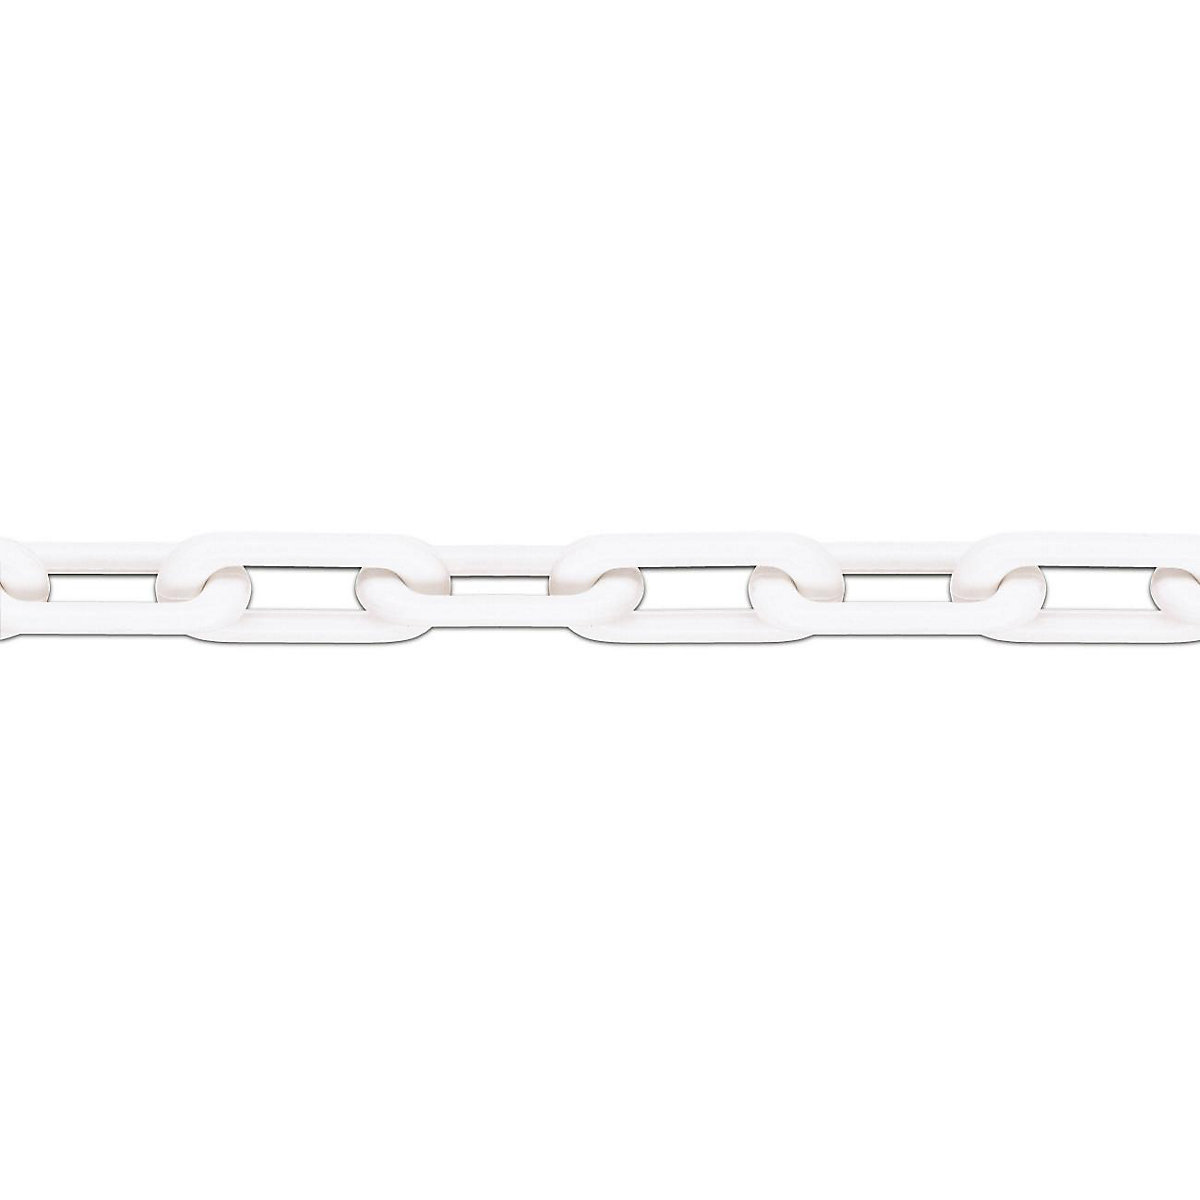 Kvalitetni najlonski lanac, kvaliteta MNK 8, dužina sklopa 25 m, u bijeloj boji, od 4 komada-5